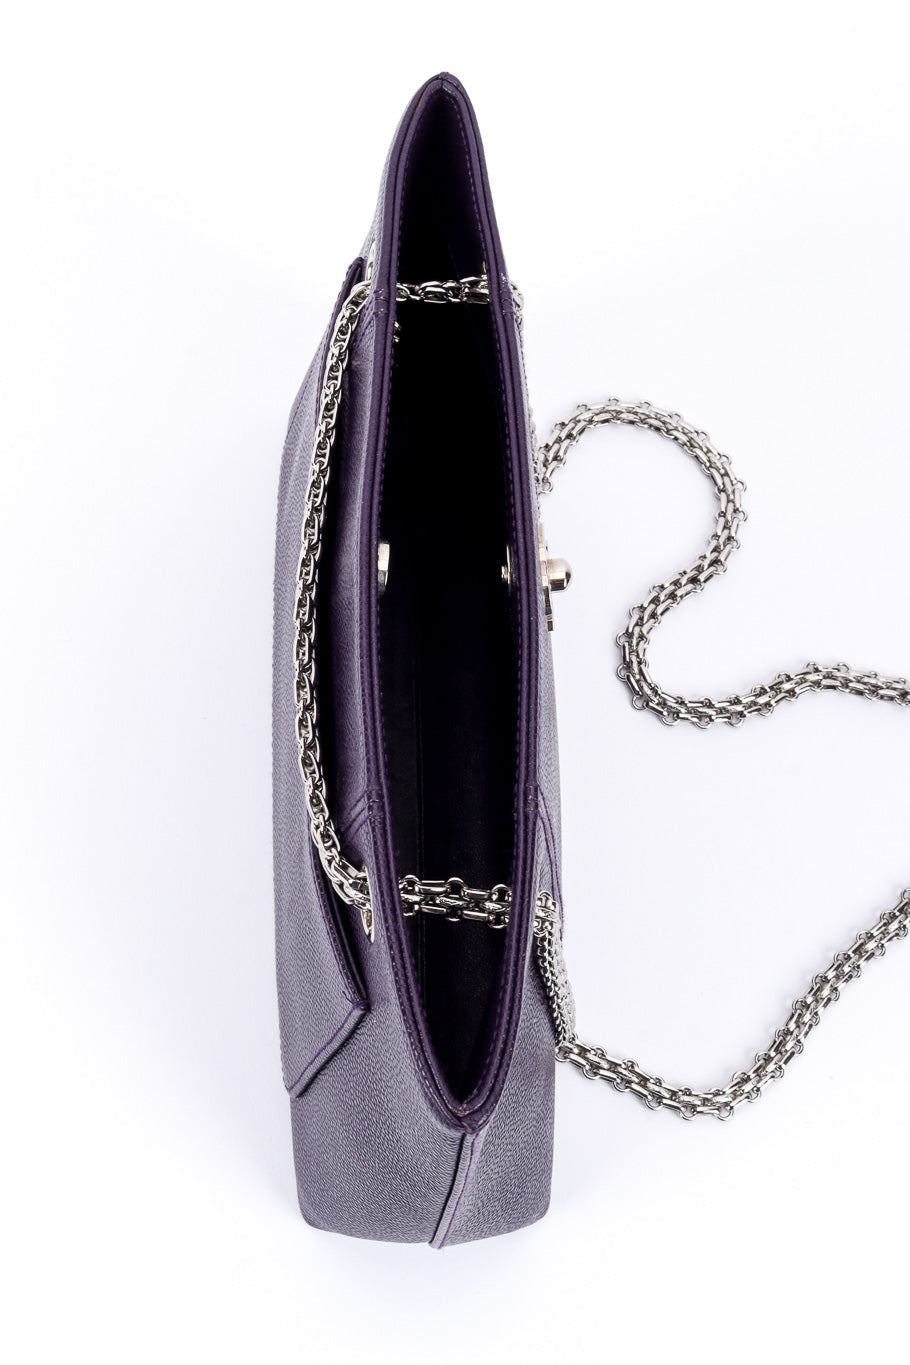 Chanel Bijoux Chain Shoulder Bag top view @recessla